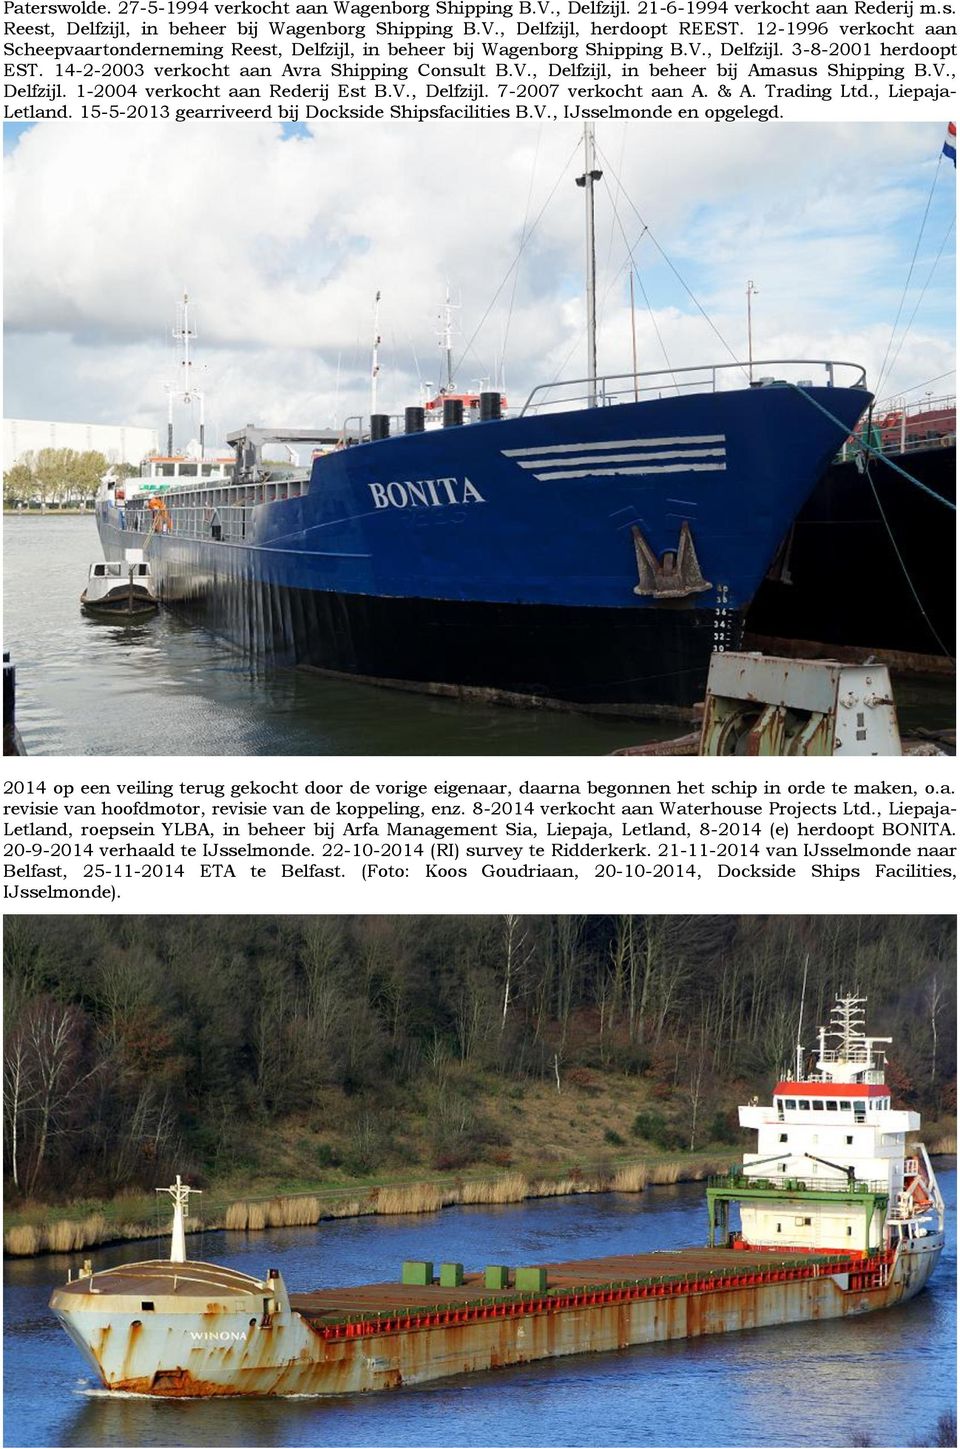 V., Delfzijl. 1-2004 verkocht aan Rederij Est B.V., Delfzijl. 7-2007 verkocht aan A. & A. Trading Ltd., Liepaja- Letland. 15-5-2013 gearriveerd bij Dockside Shipsfacilities B.V., IJsselmonde en opgelegd.